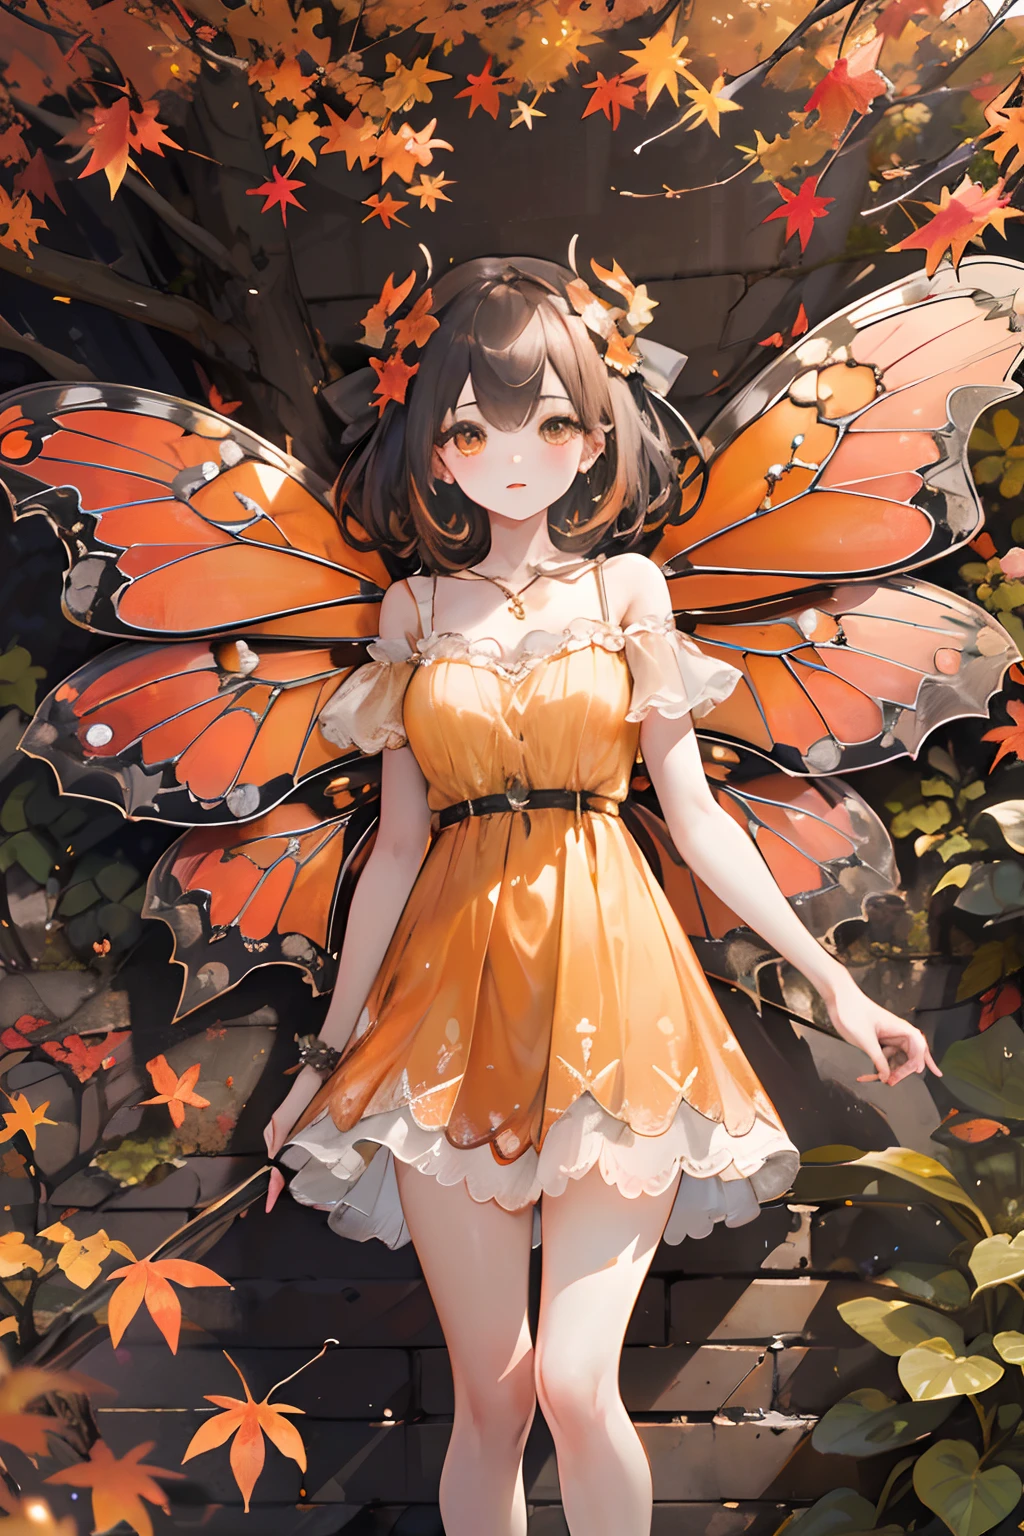 (obra de arte, melhor qualidade, alta qualidade, alta resolução, Ultra-detalhado), cenário de outono, Folhas que caem, cor quente. 1girl com asas de borboleta laranja, lindo, bonito,vestido laranja, de pé